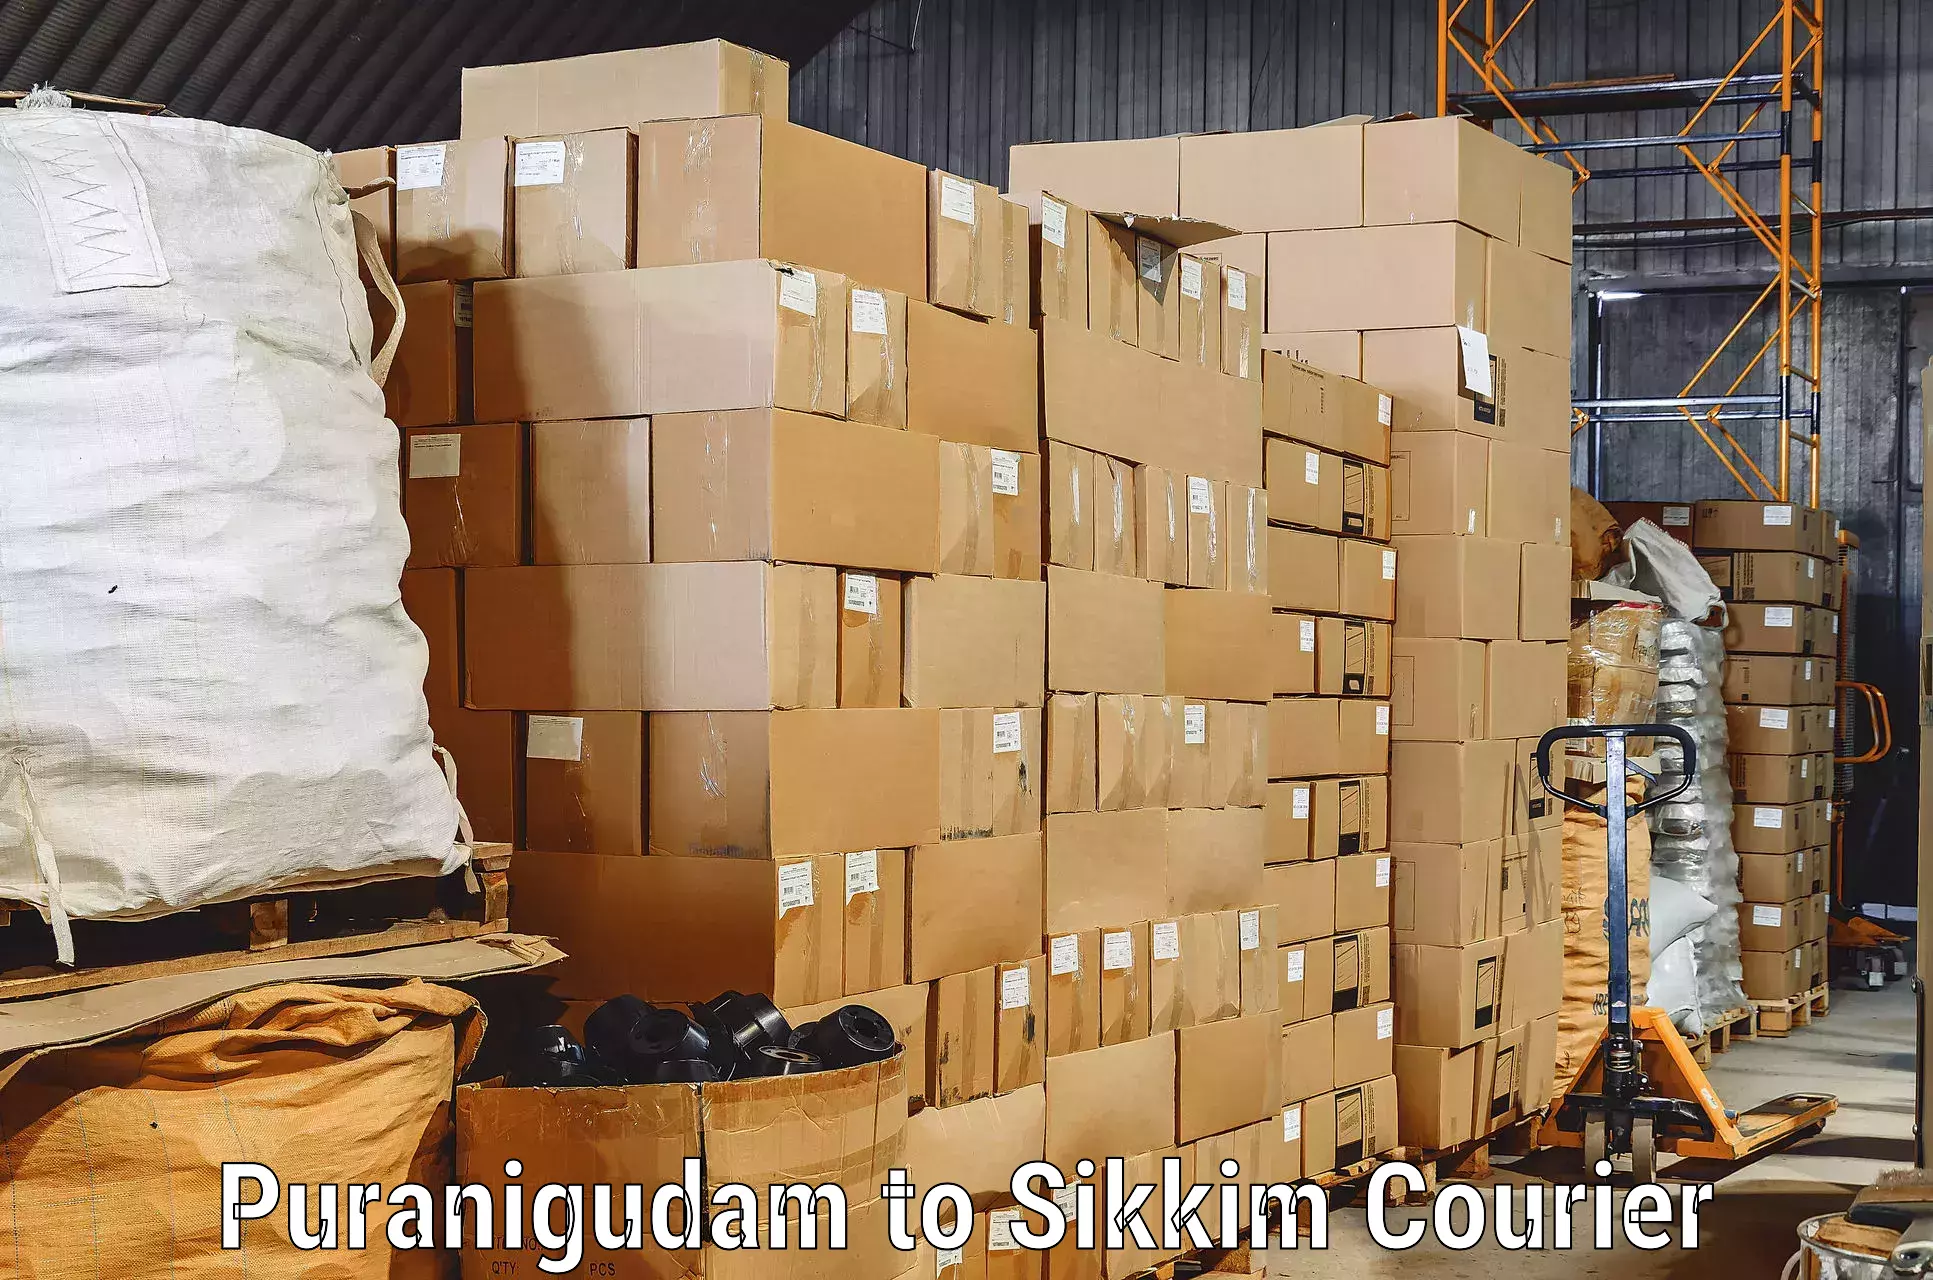 Efficient relocation services in Puranigudam to Sikkim